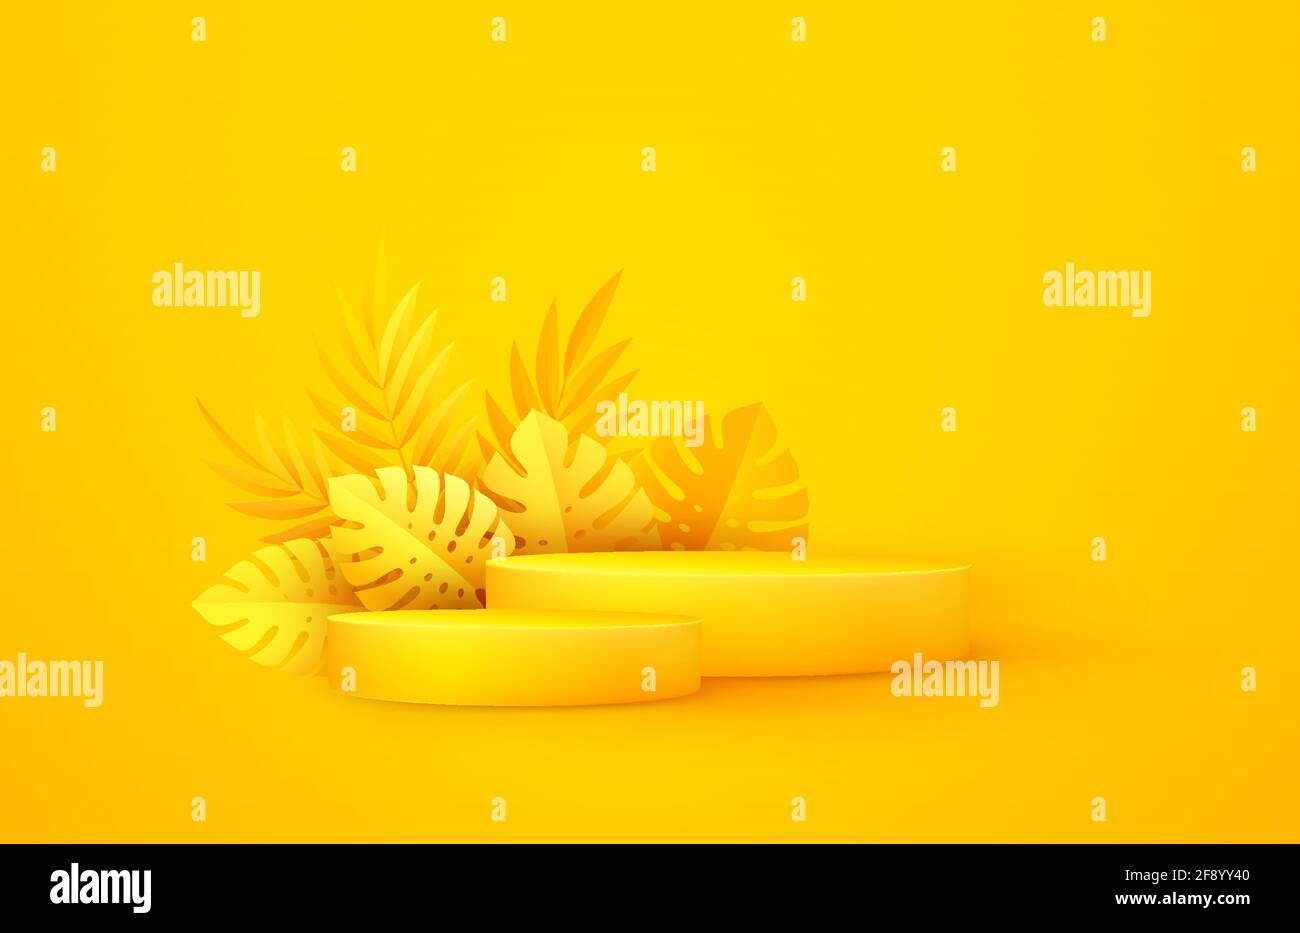 Scène jaune minimale avec formes géométriques et feuilles de palmier. Podium cylindrique sur fond jaune. Etape 3D pour l'affichage d'un produit cosmétique Illustration de Vecteur